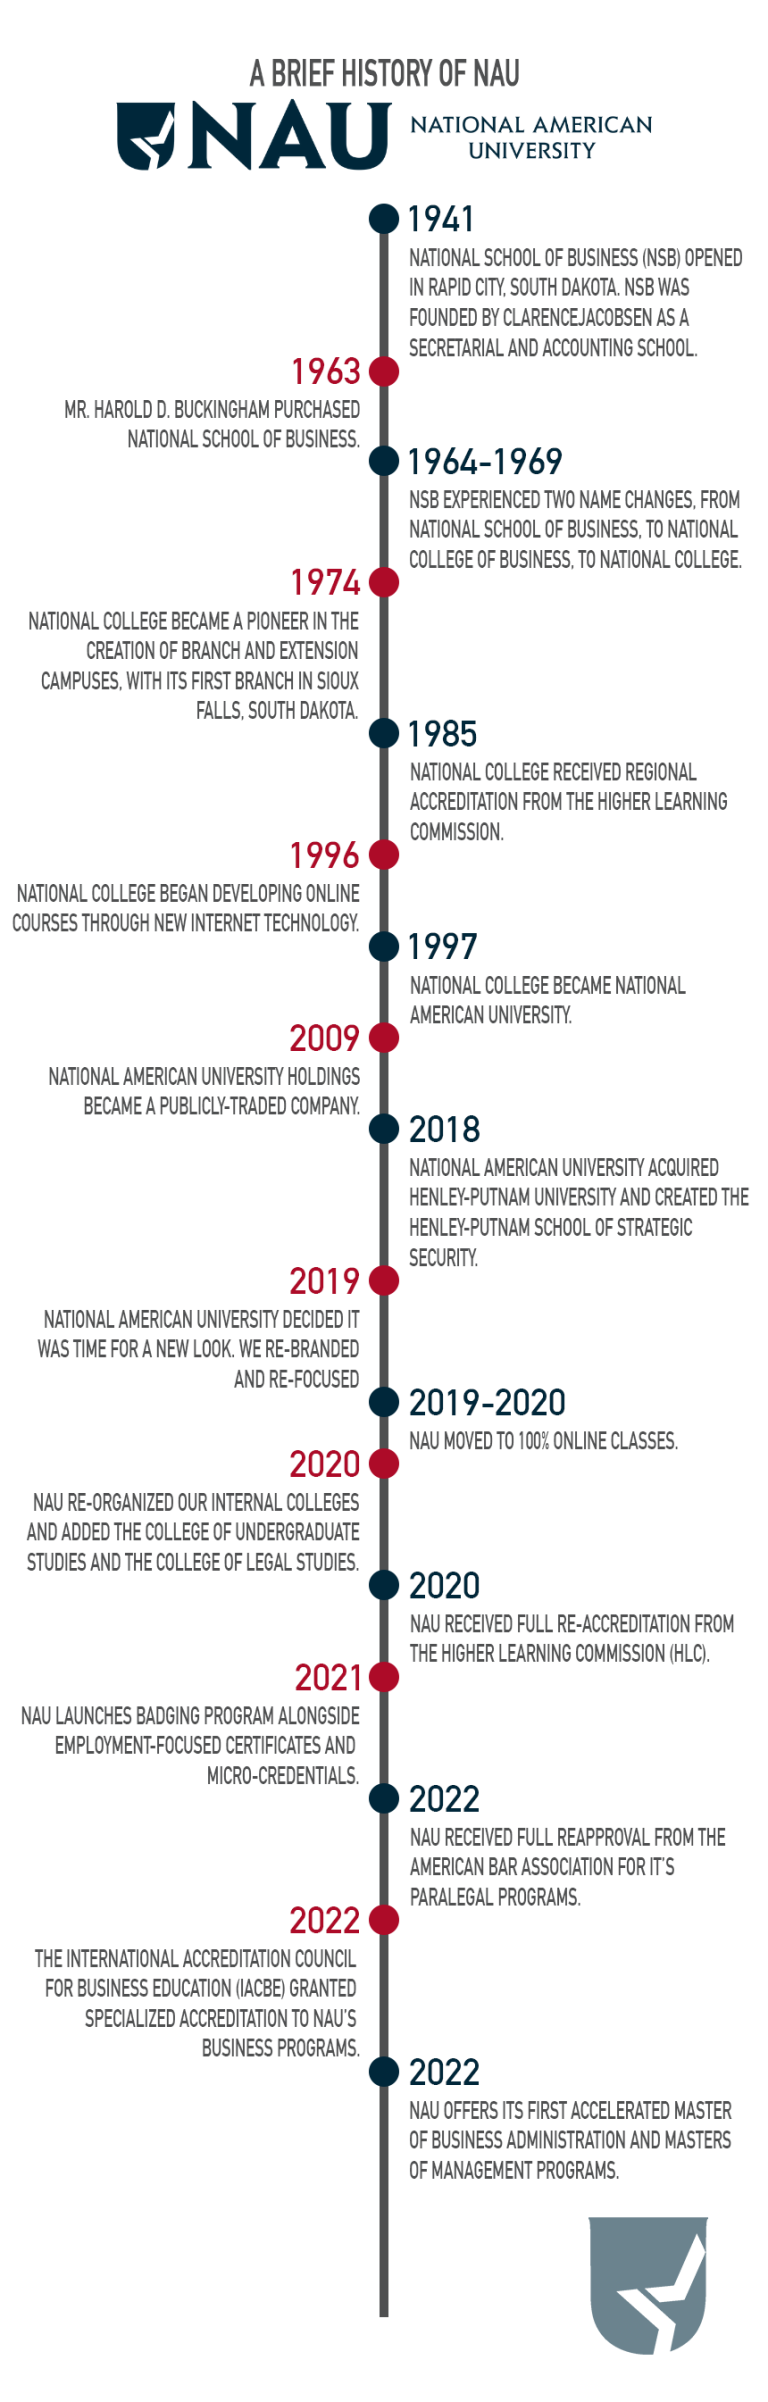 A Brief History of NAU